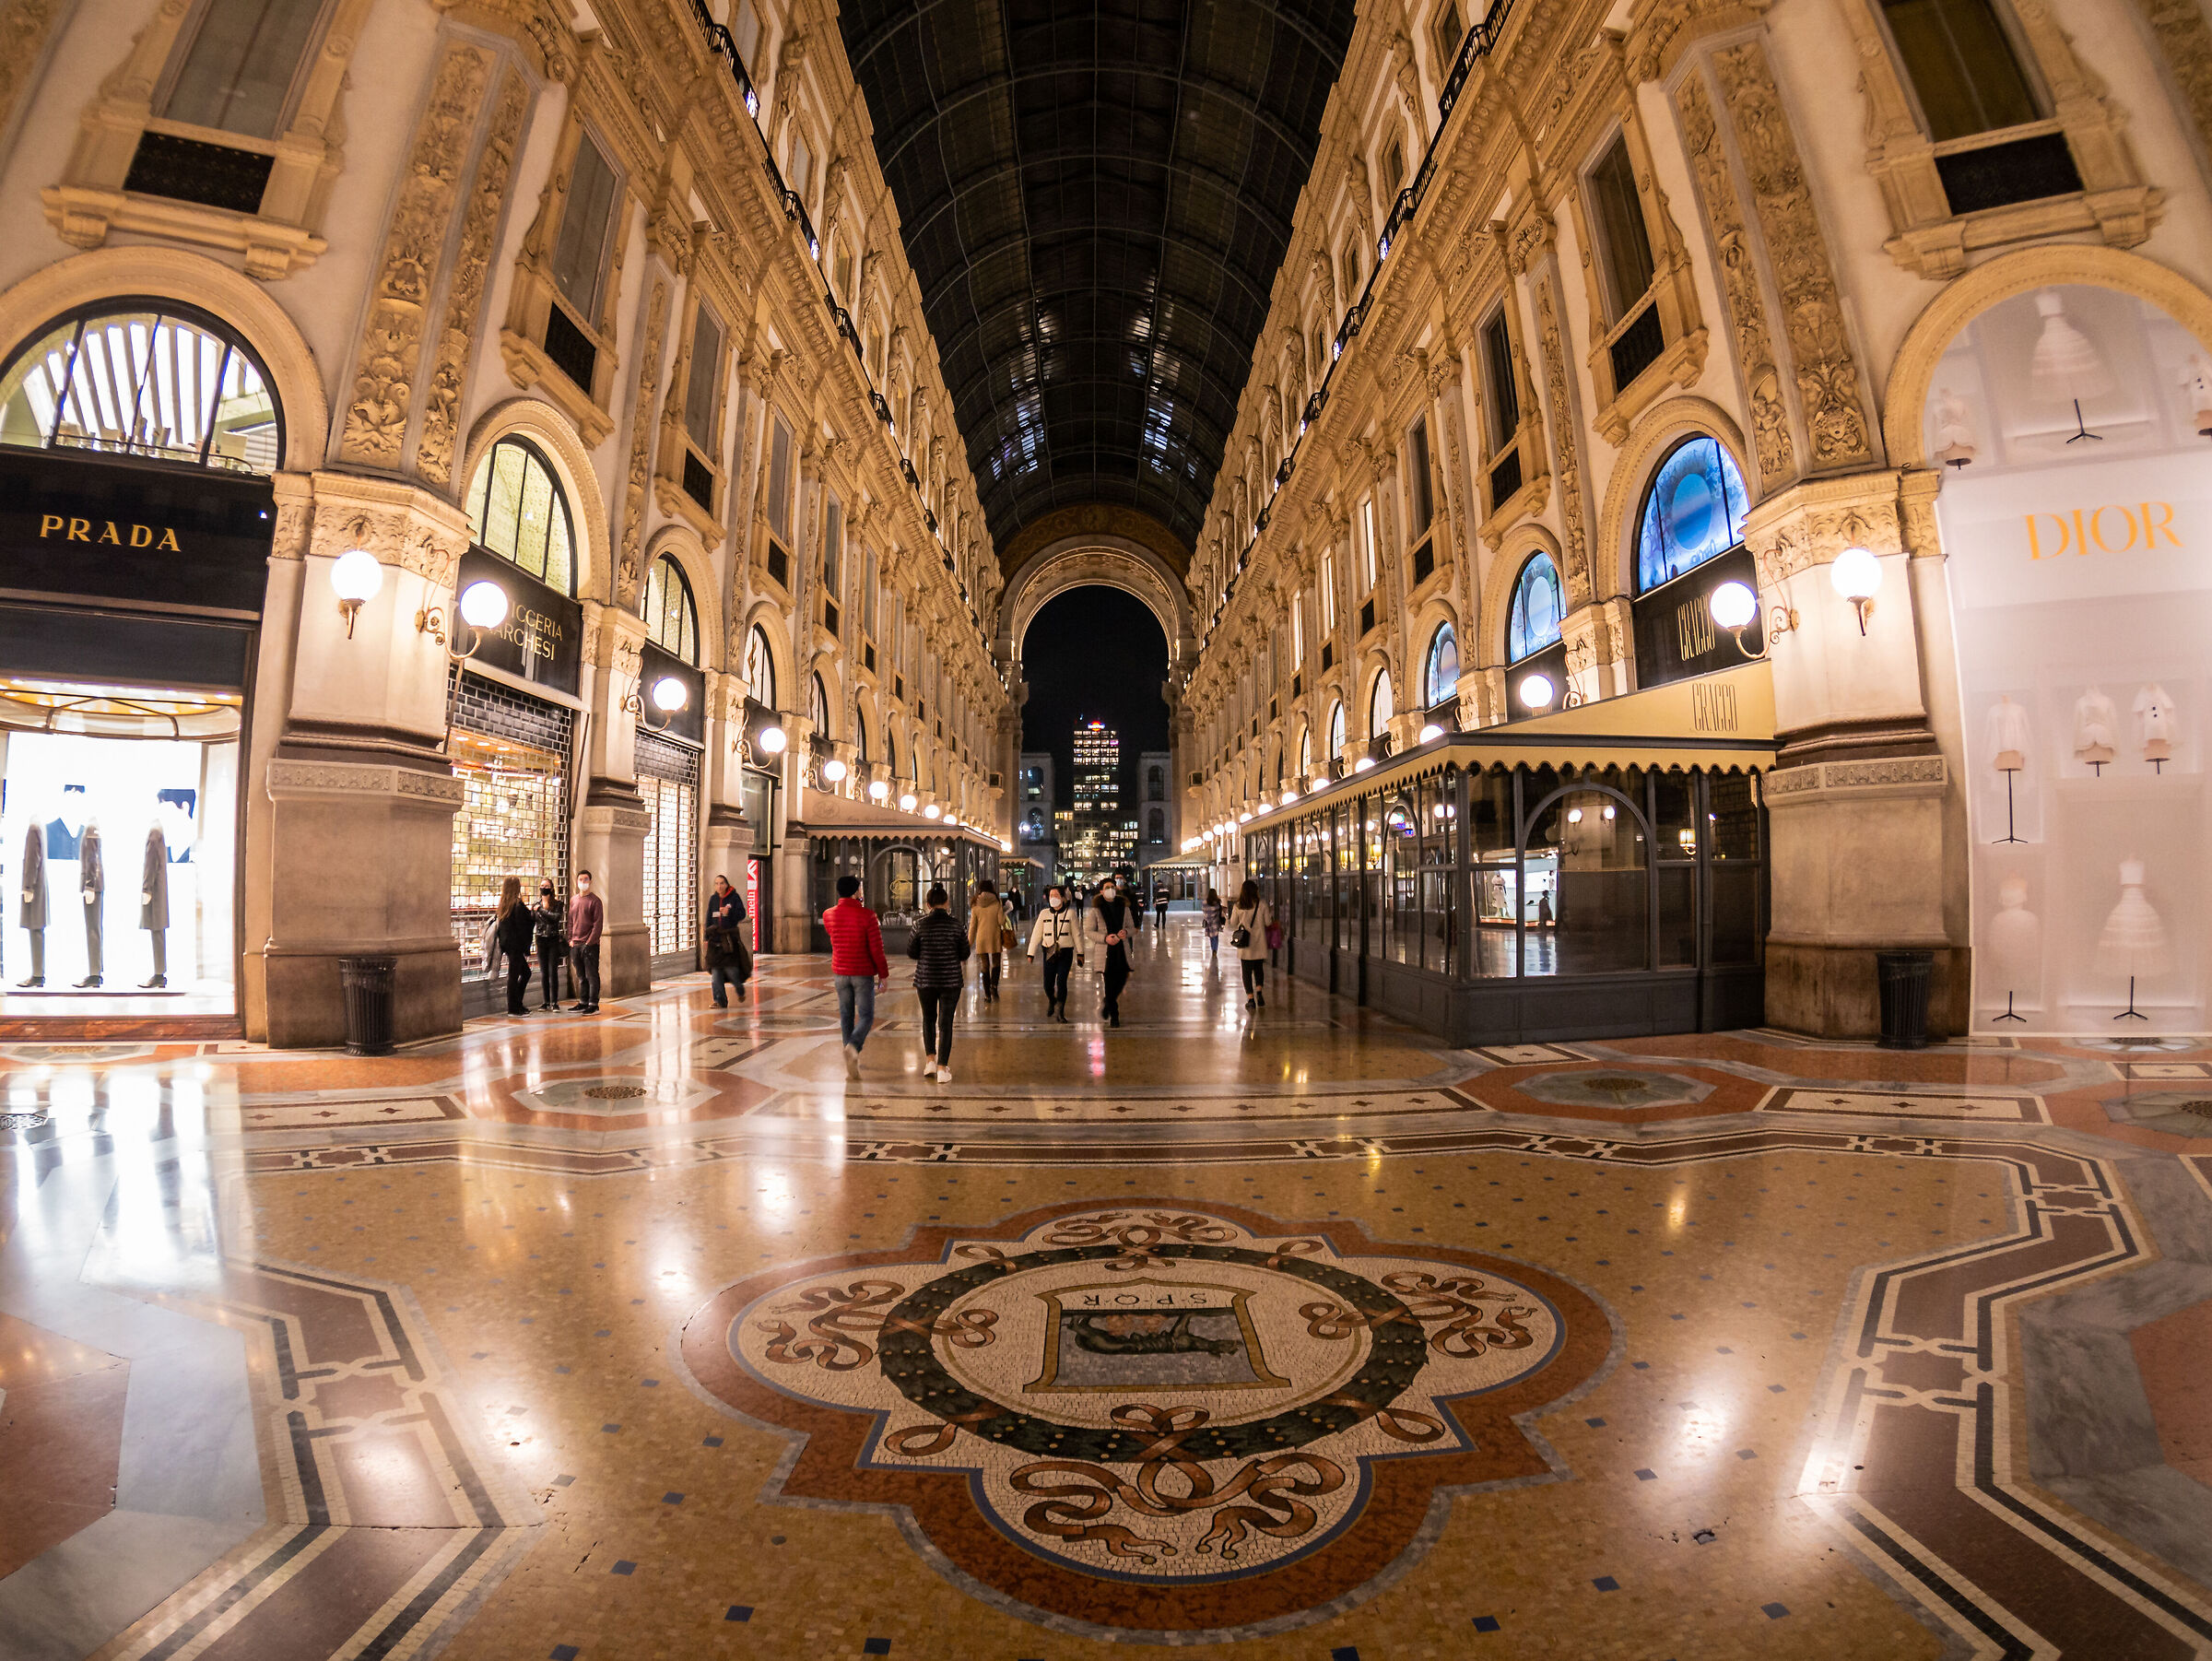 Galleria vittorio Emanuele - Milan ...